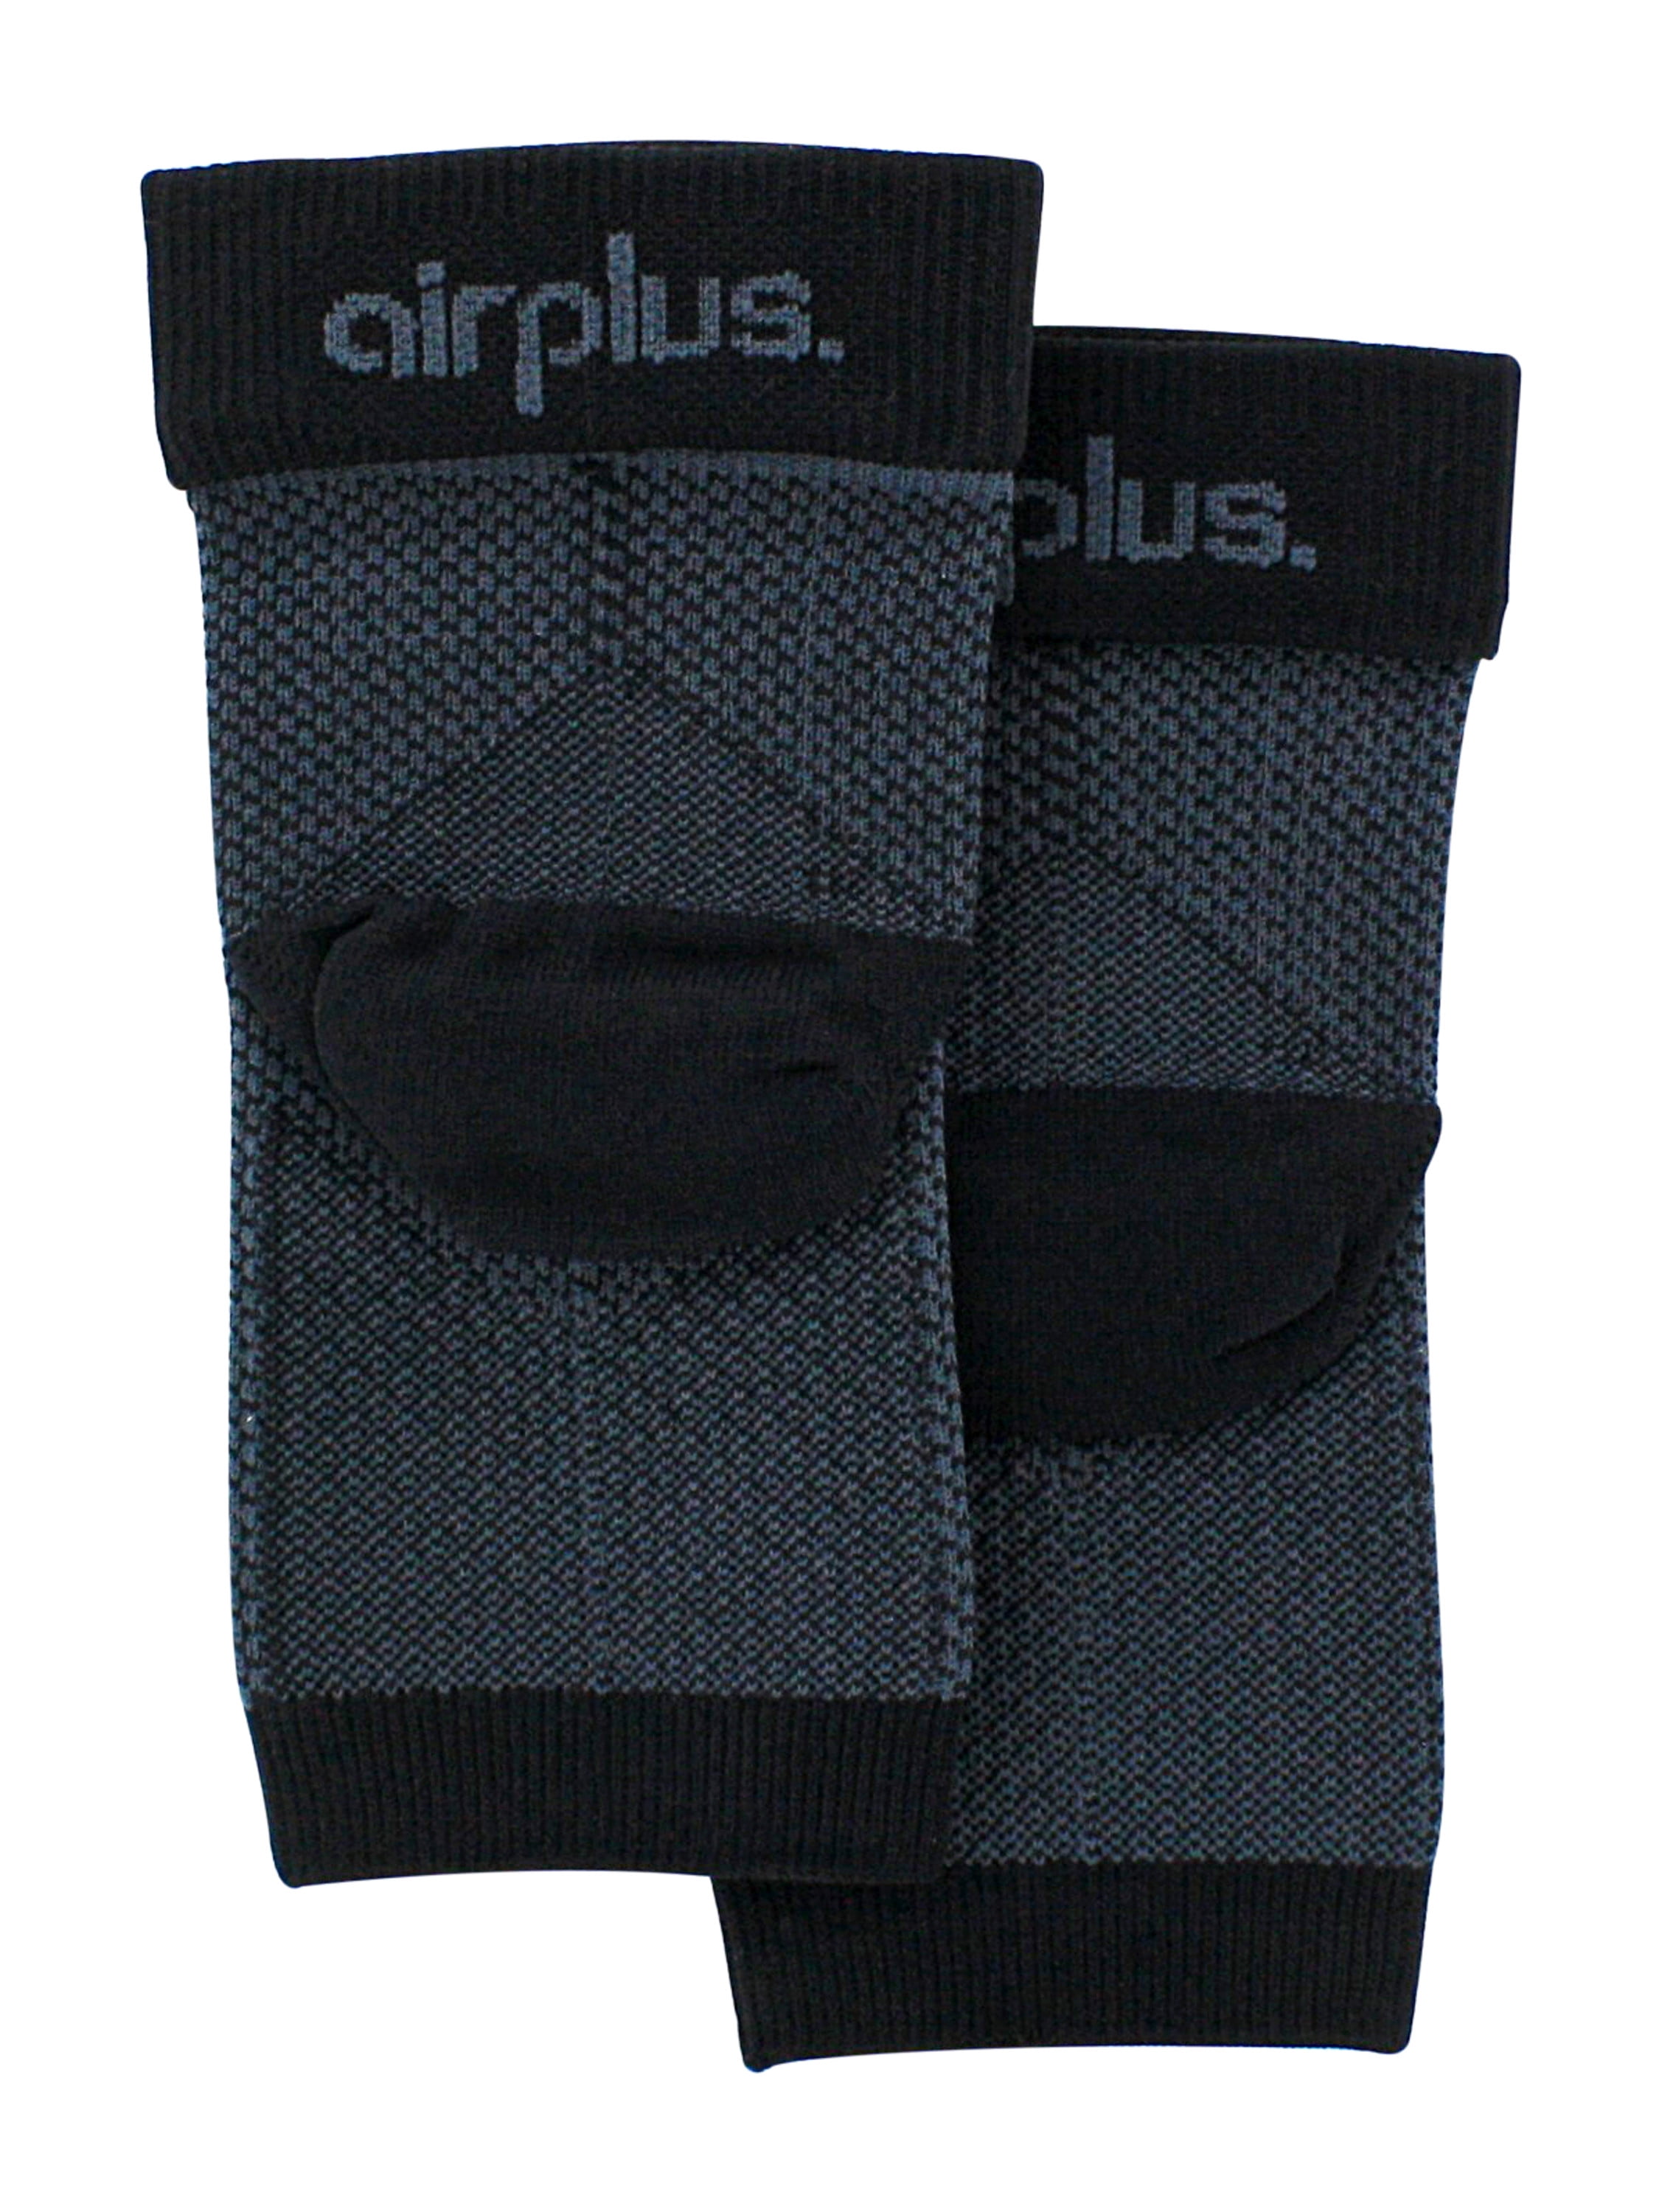 airplus plantar fascia